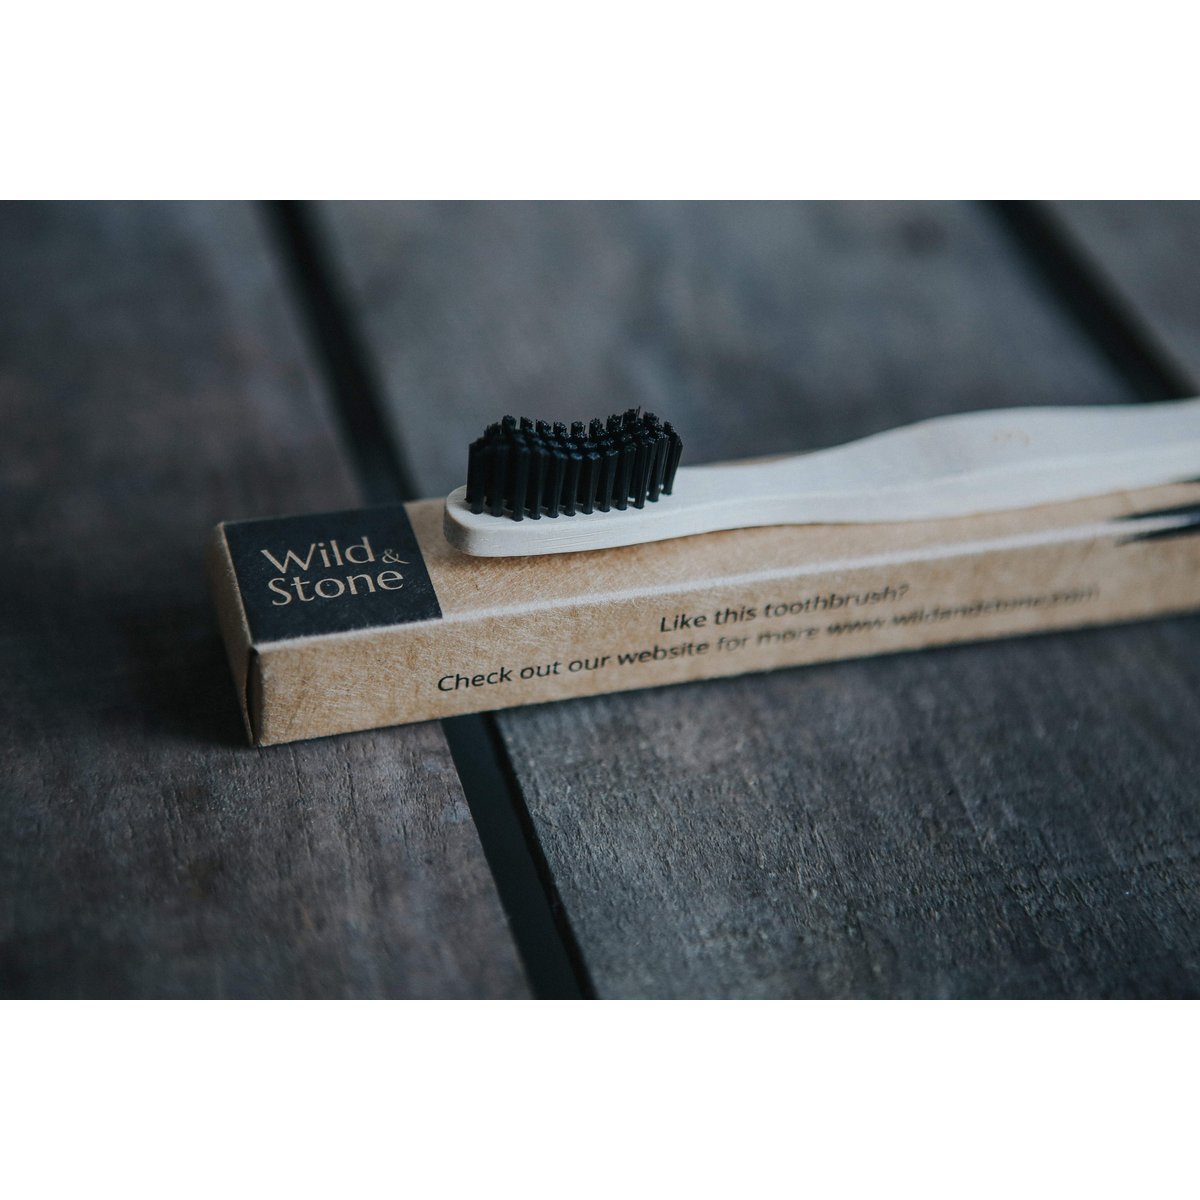 Bambuszahnbürste für Erwachsene - Wild and Stone - Zahnpflege | Waya